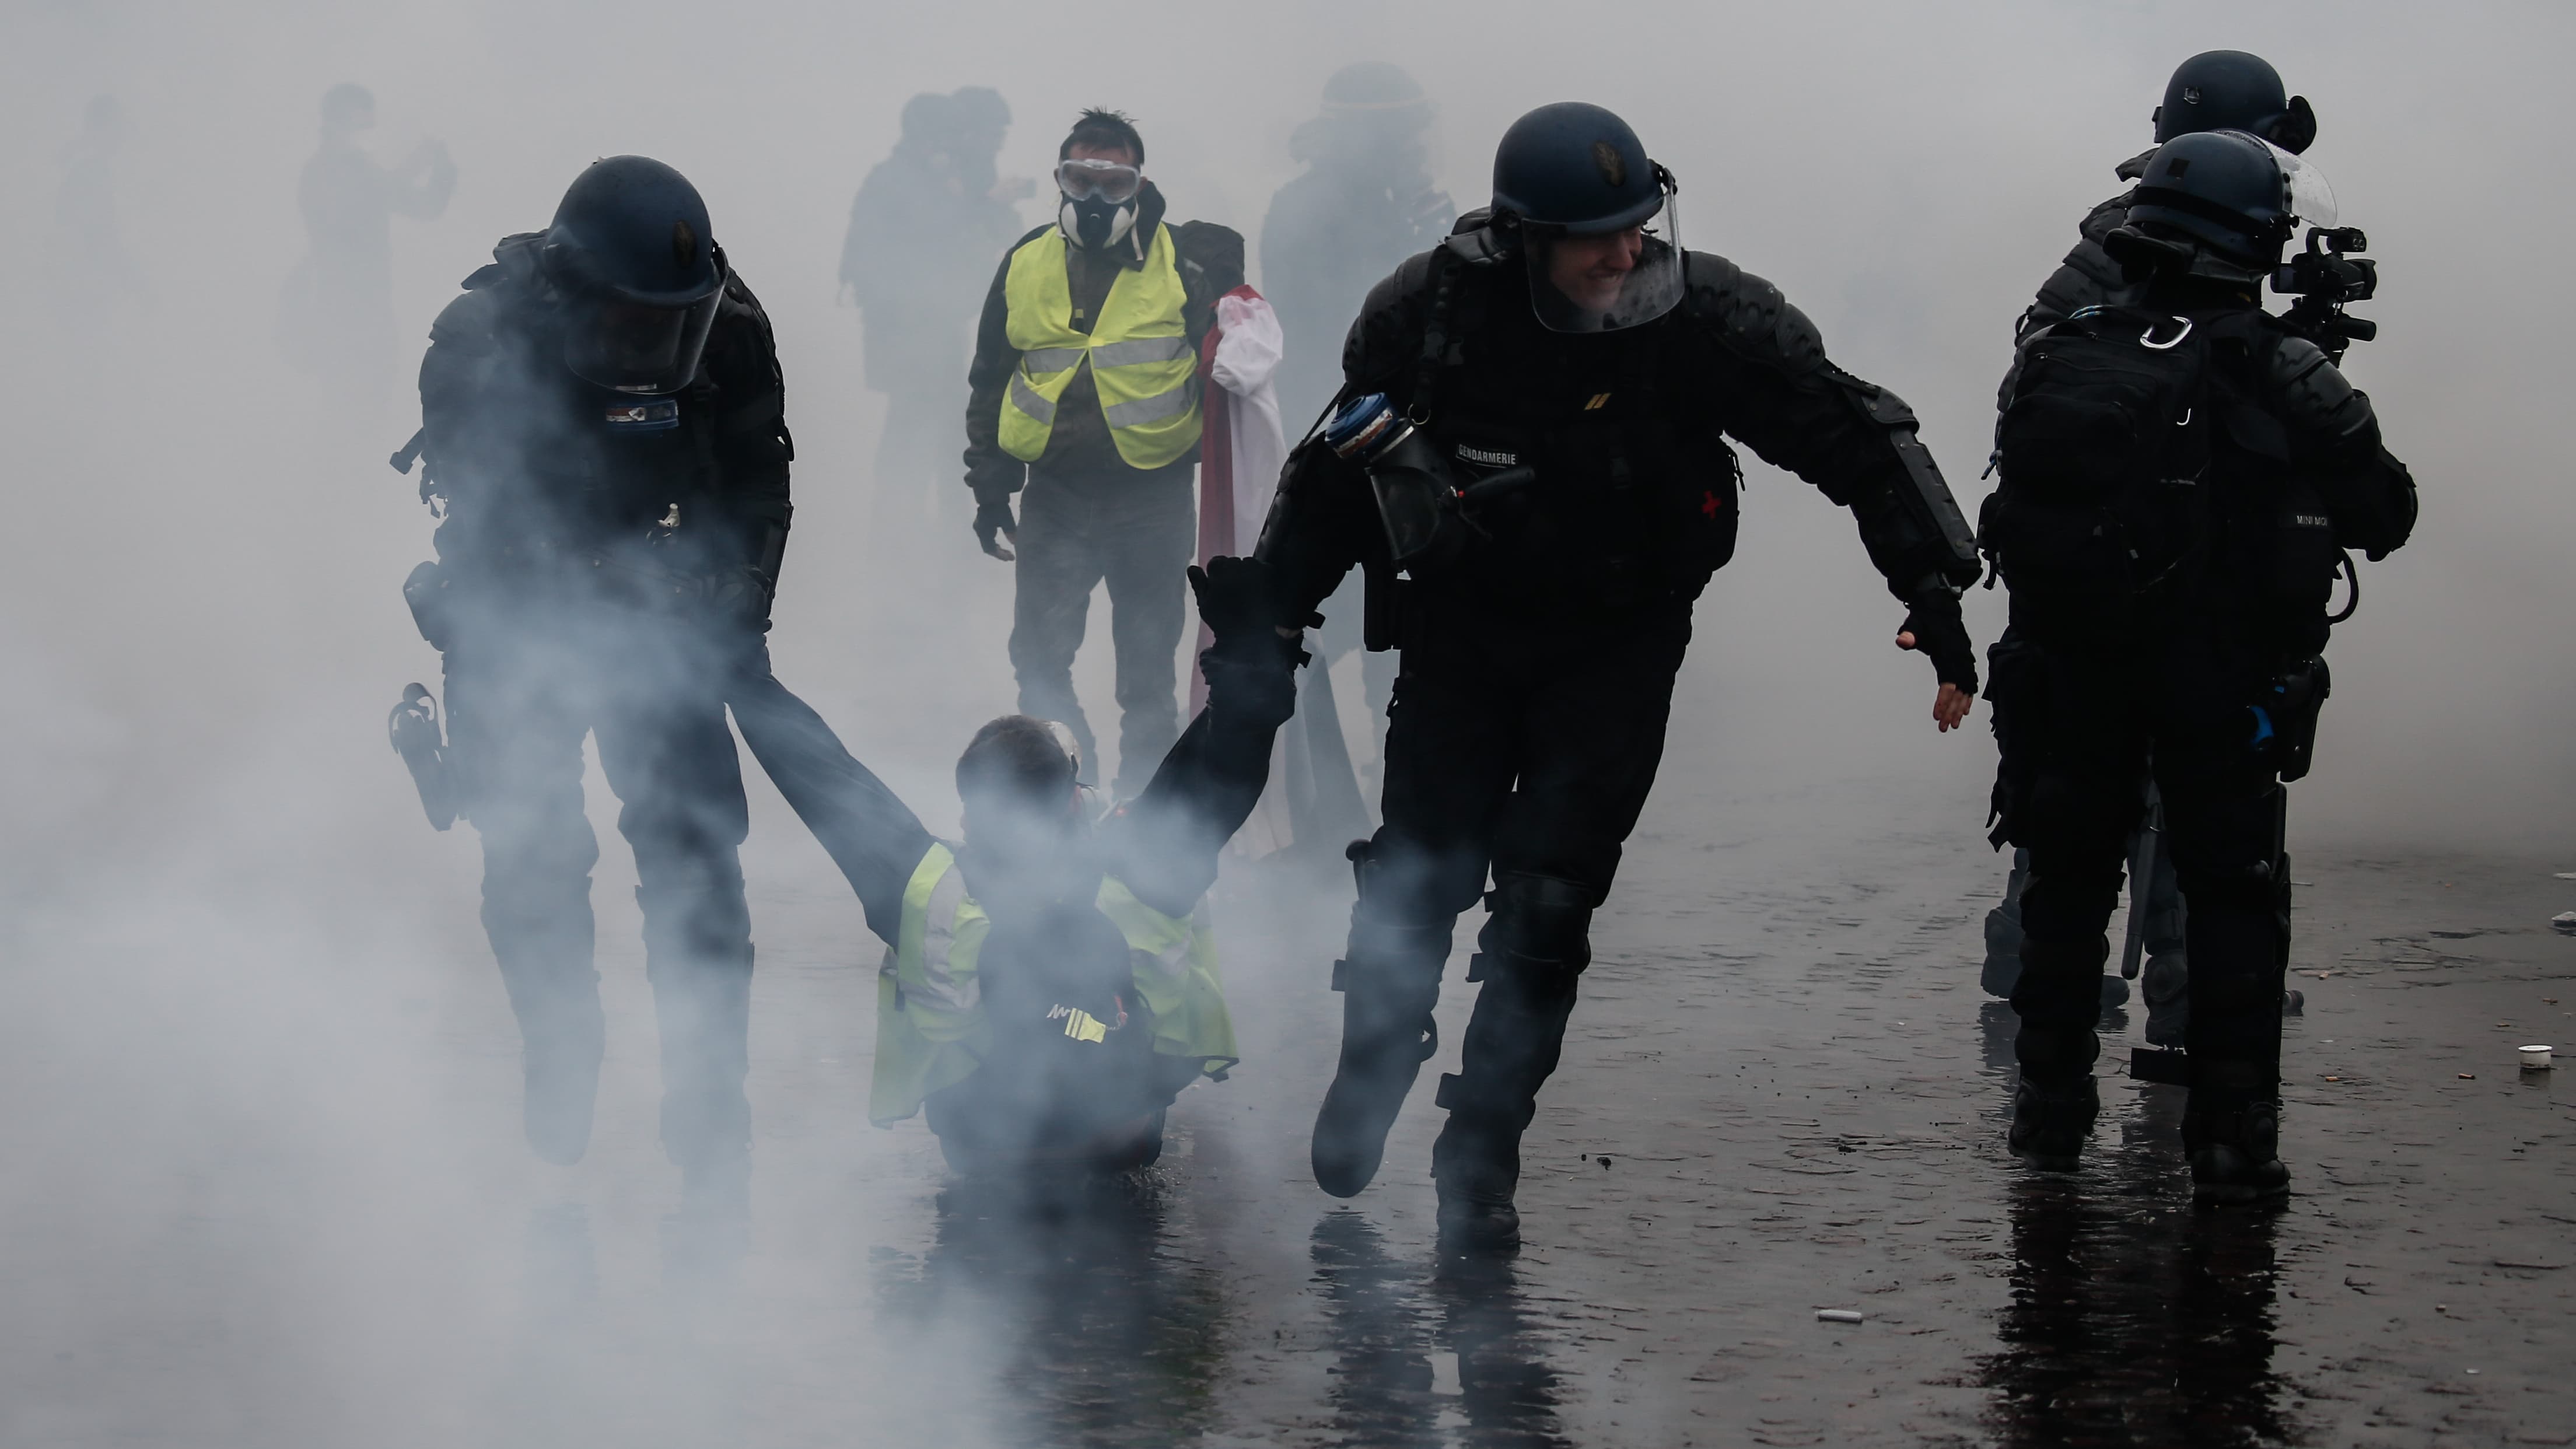 Émeutes à Paris un fiasco pour les forces de l'ordre?